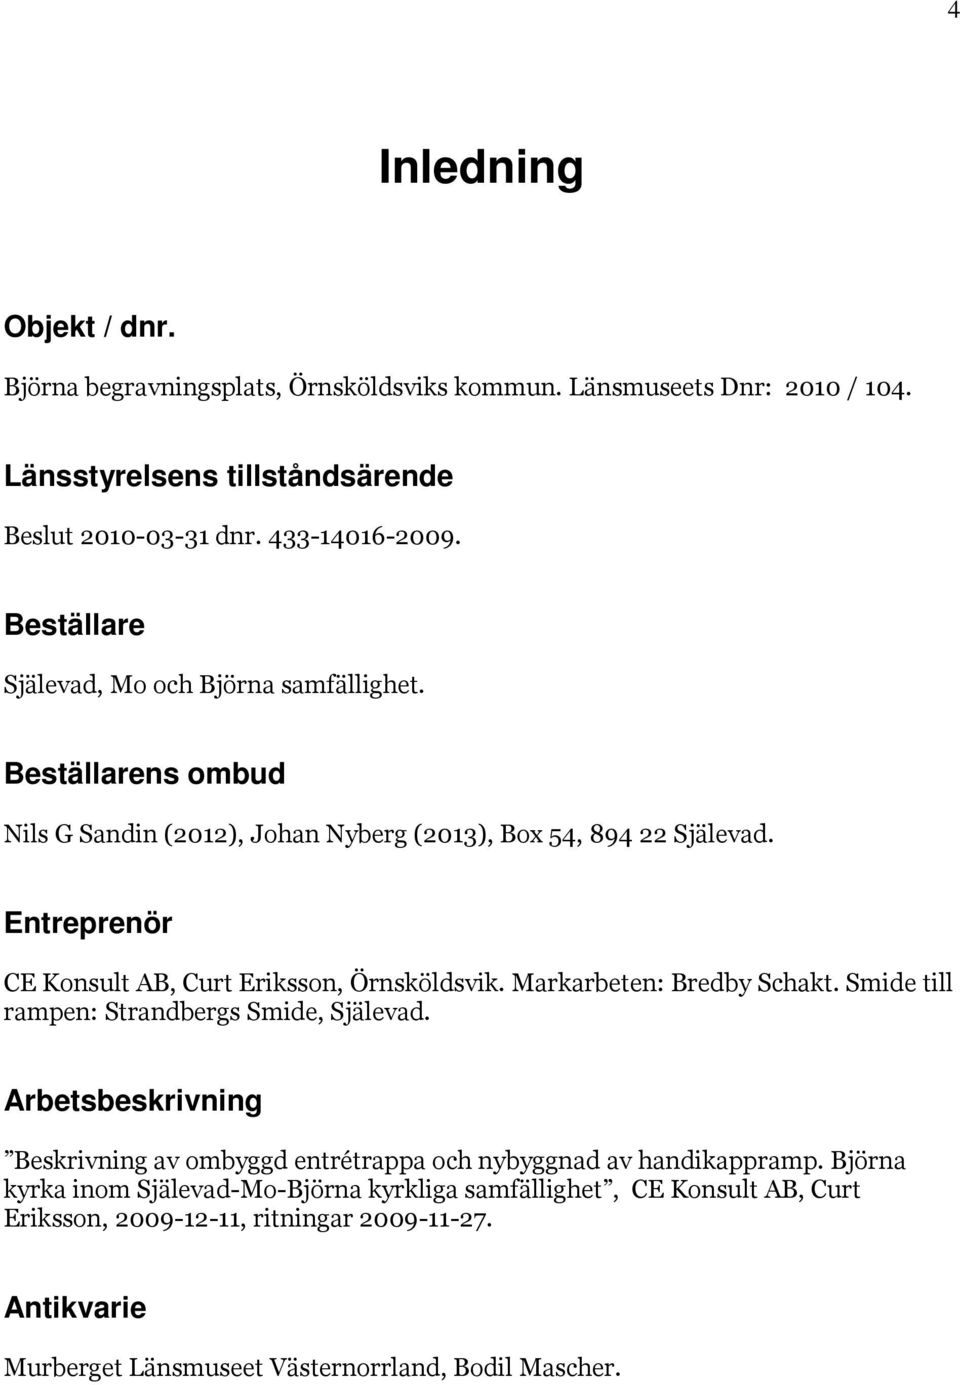 Entreprenör CE Konsult AB, Curt Eriksson, Örnsköldsvik. Markarbeten: Bredby Schakt. Smide till rampen: Strandbergs Smide, Själevad.